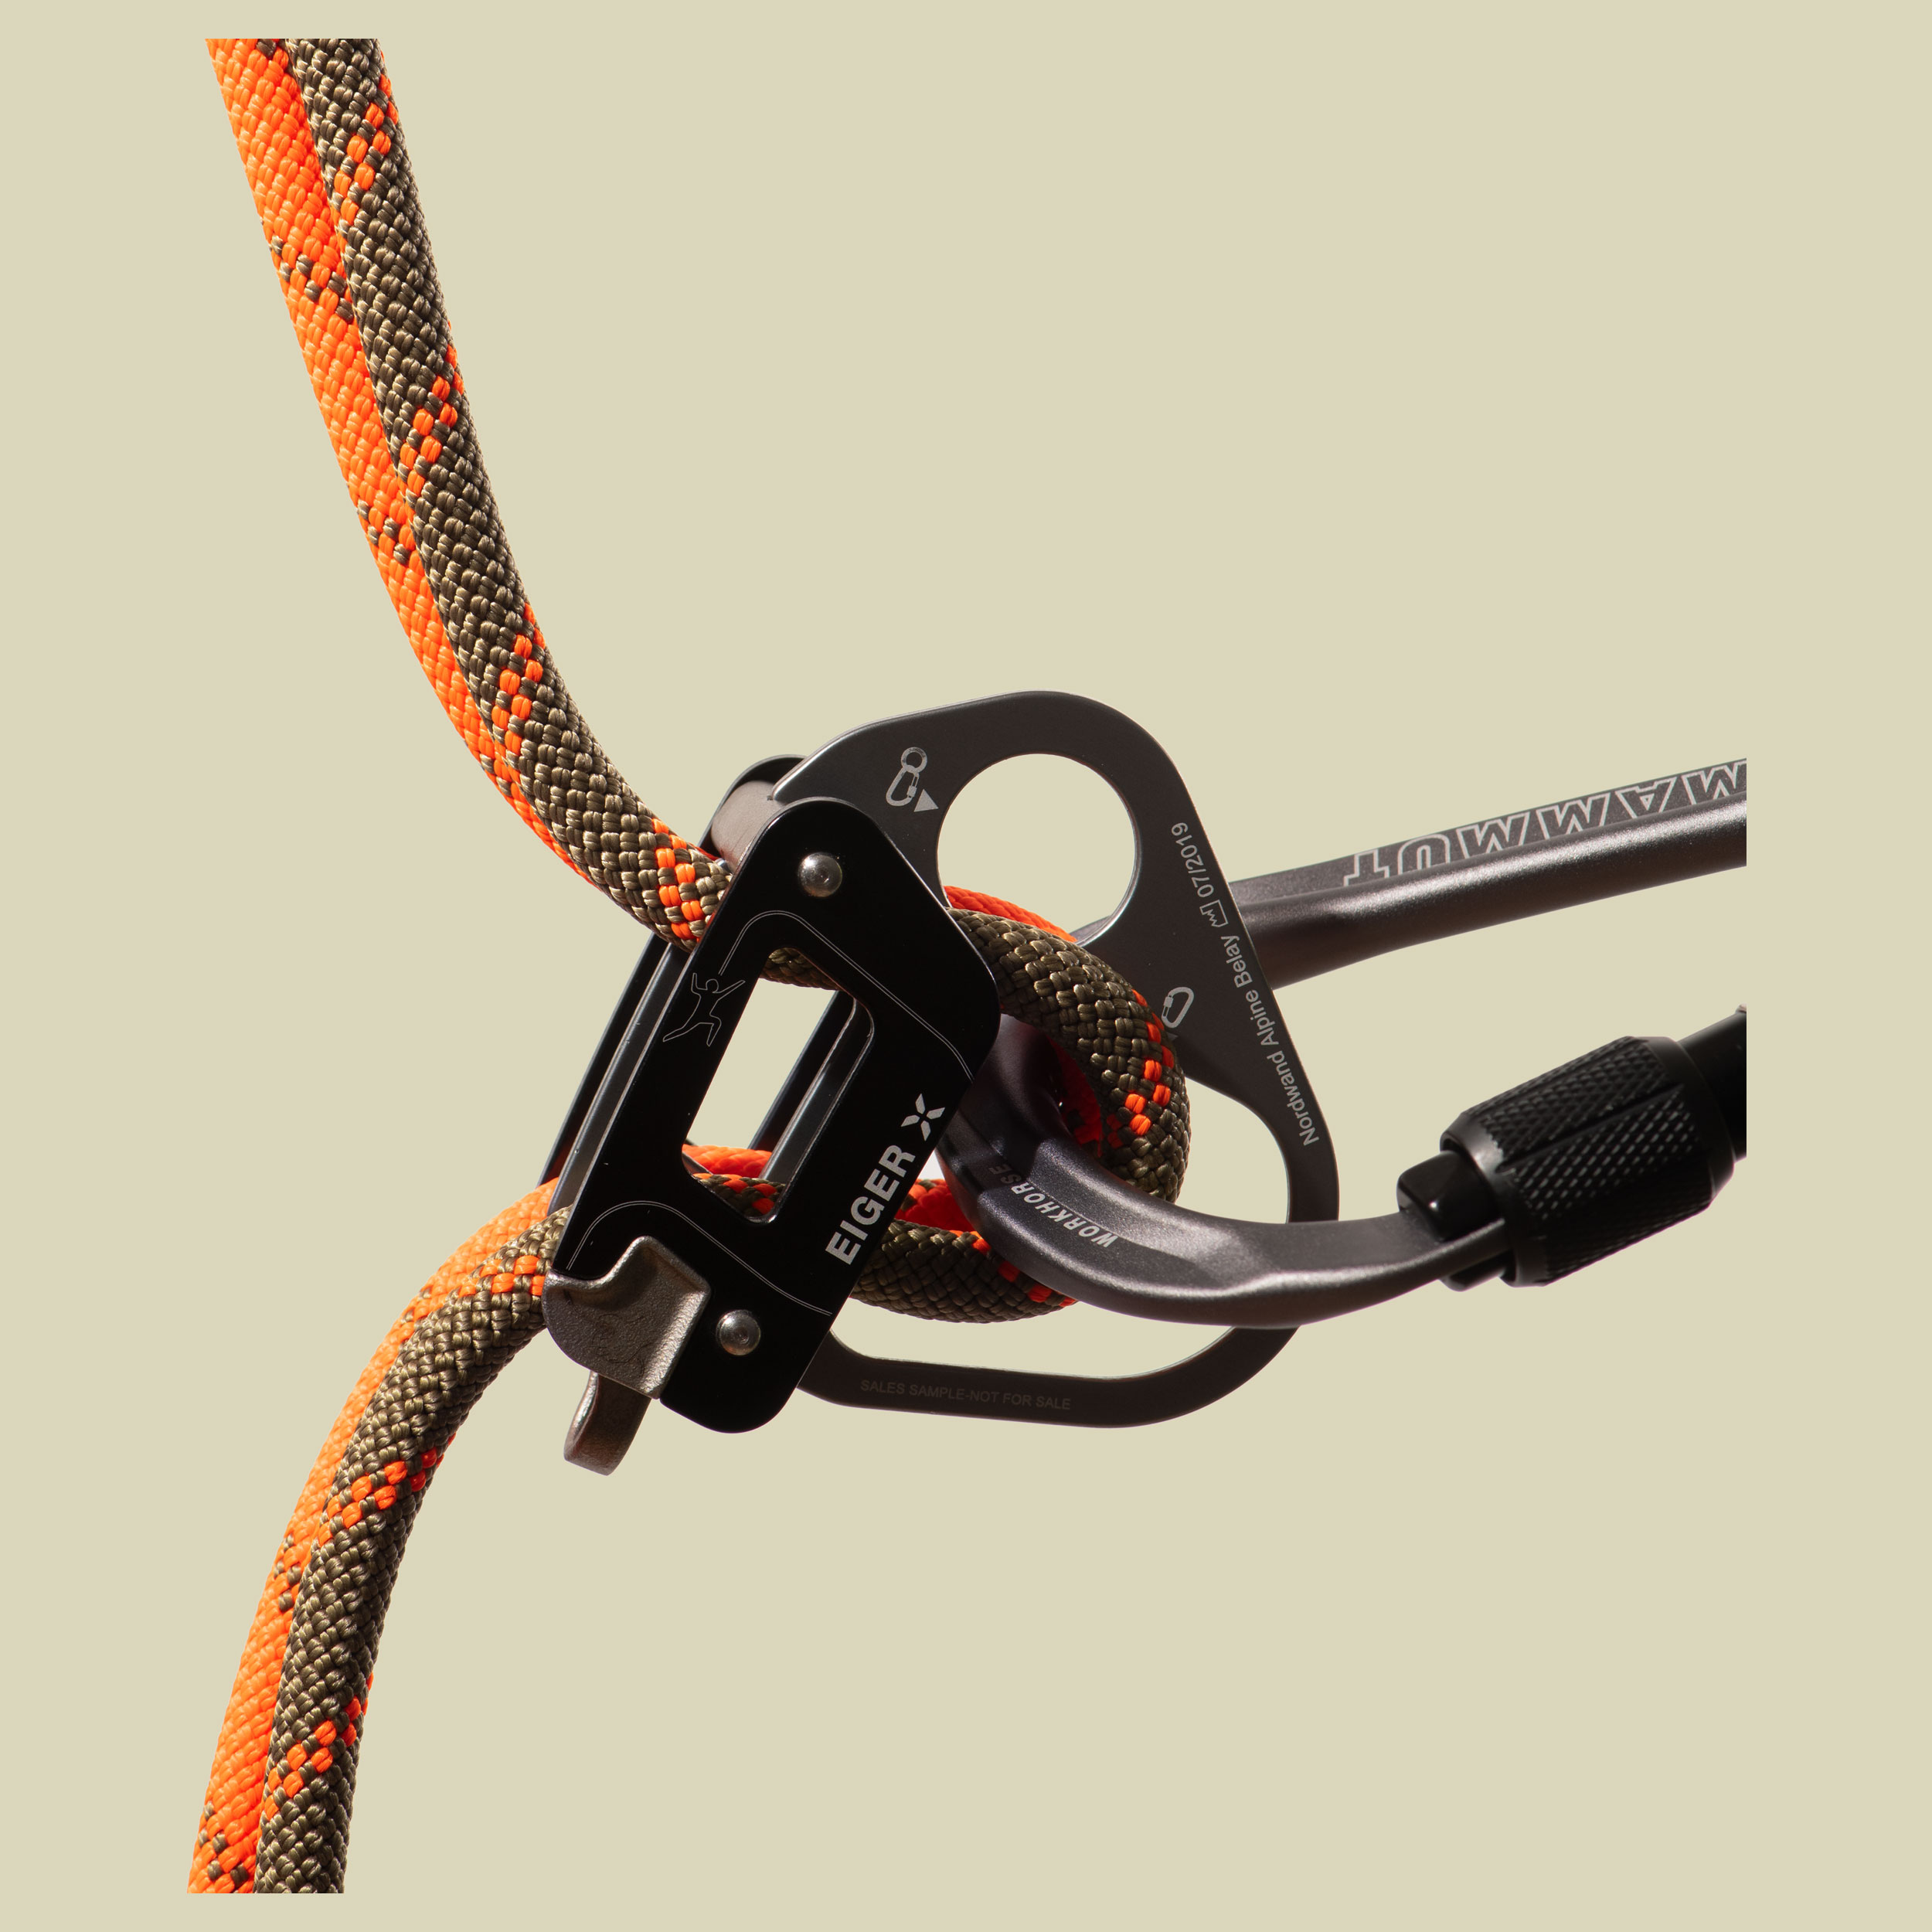 8.0 Alpine Dry Rope Dry Standard boa-safety orange 60 m - boa-safety orange